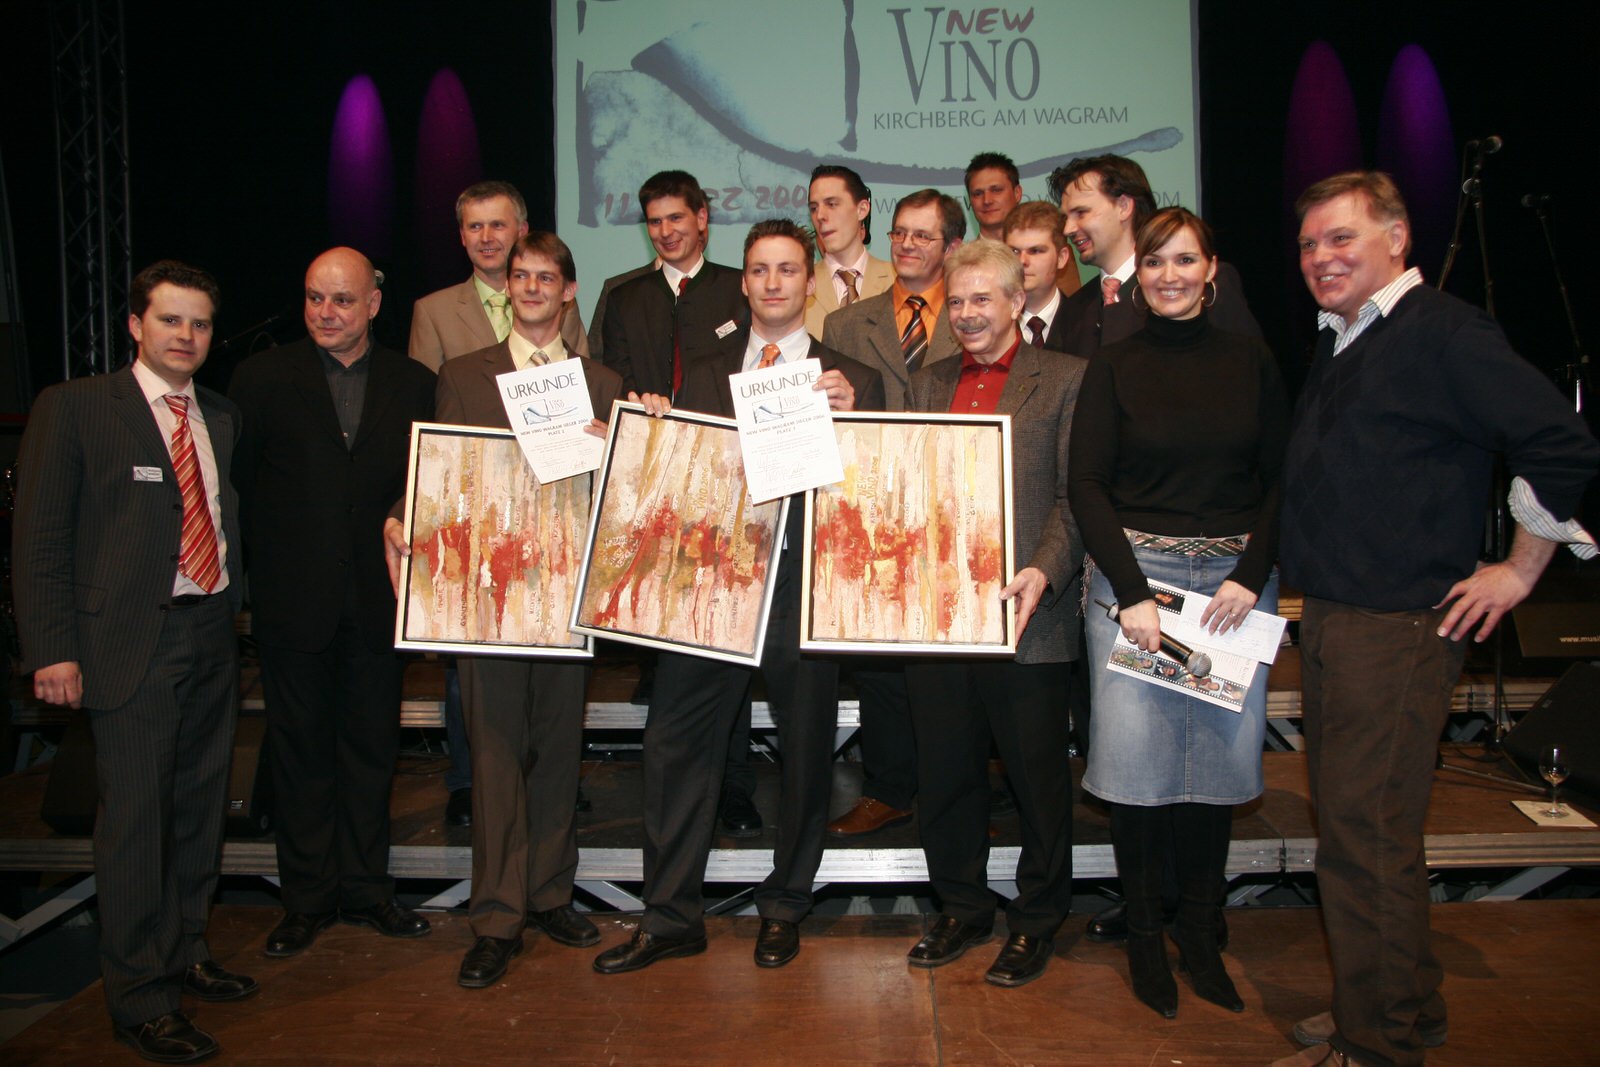 New Vino Wagram 2006 - die Weinpräsentation der anderen Art